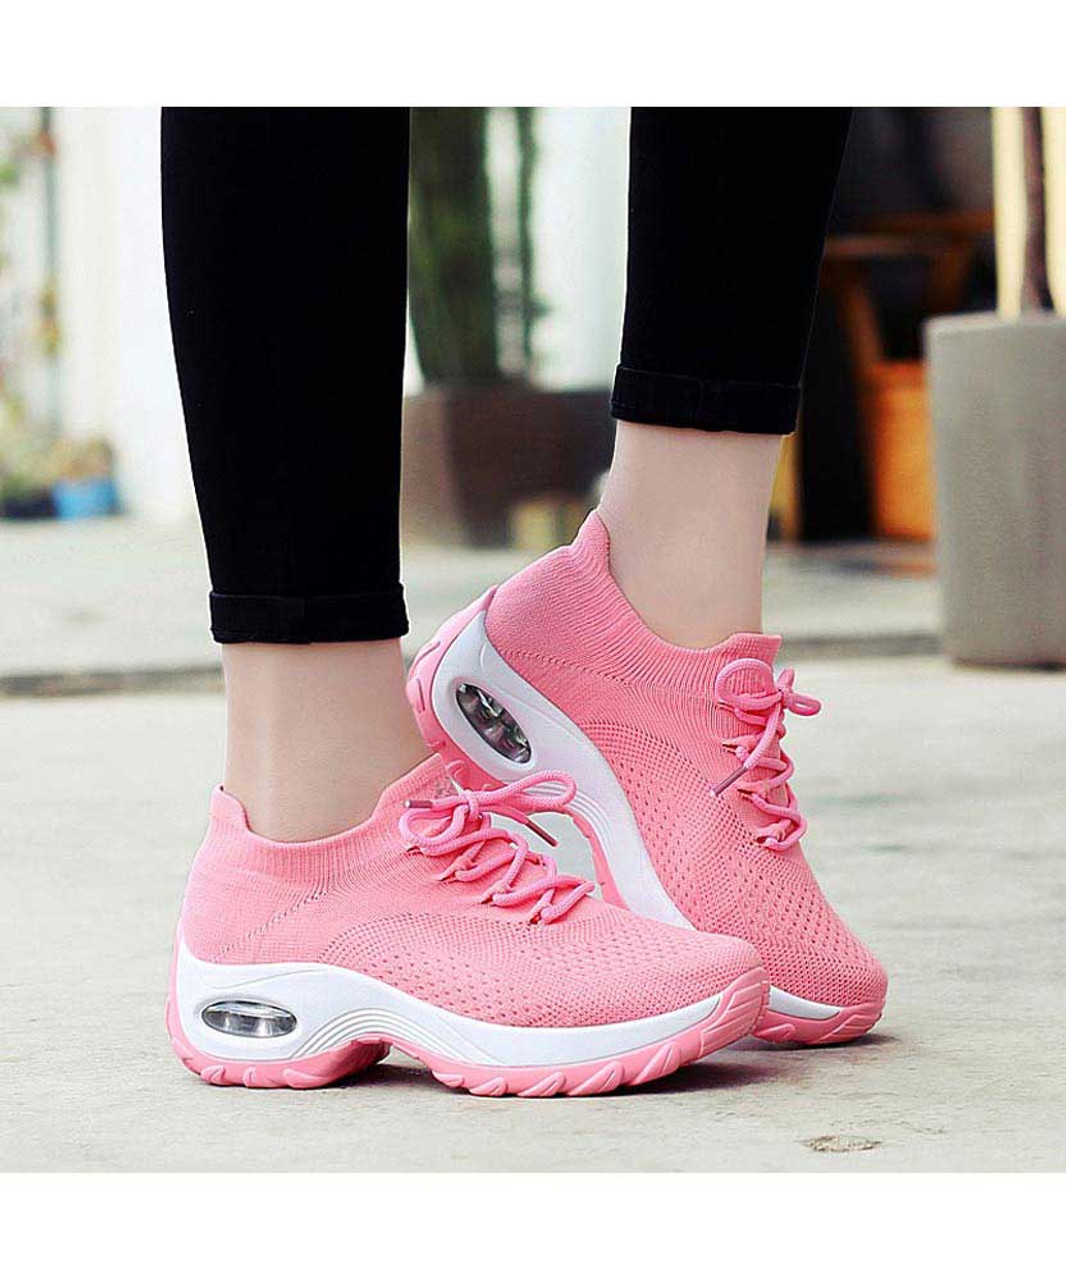 Pink sock like entry double rocker bottom shoe sneaker | Womens rocker ...